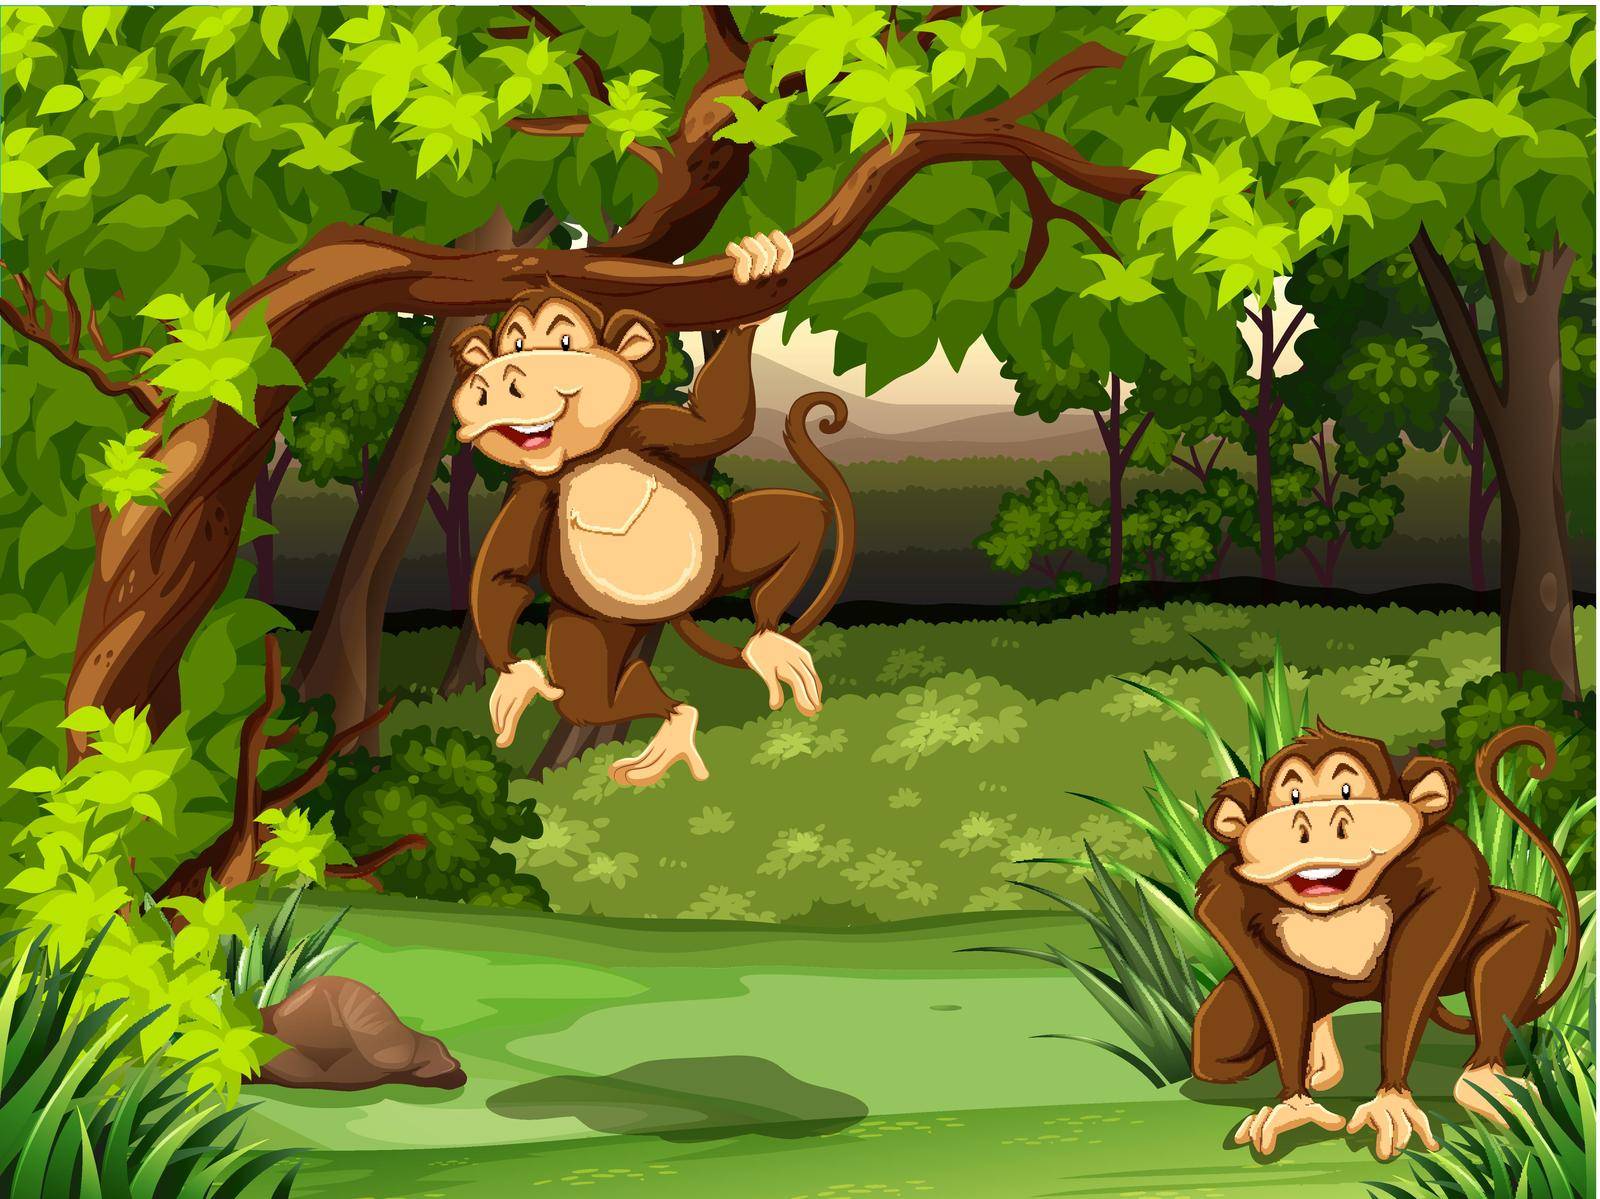 Two monkeys sitting in a jungle